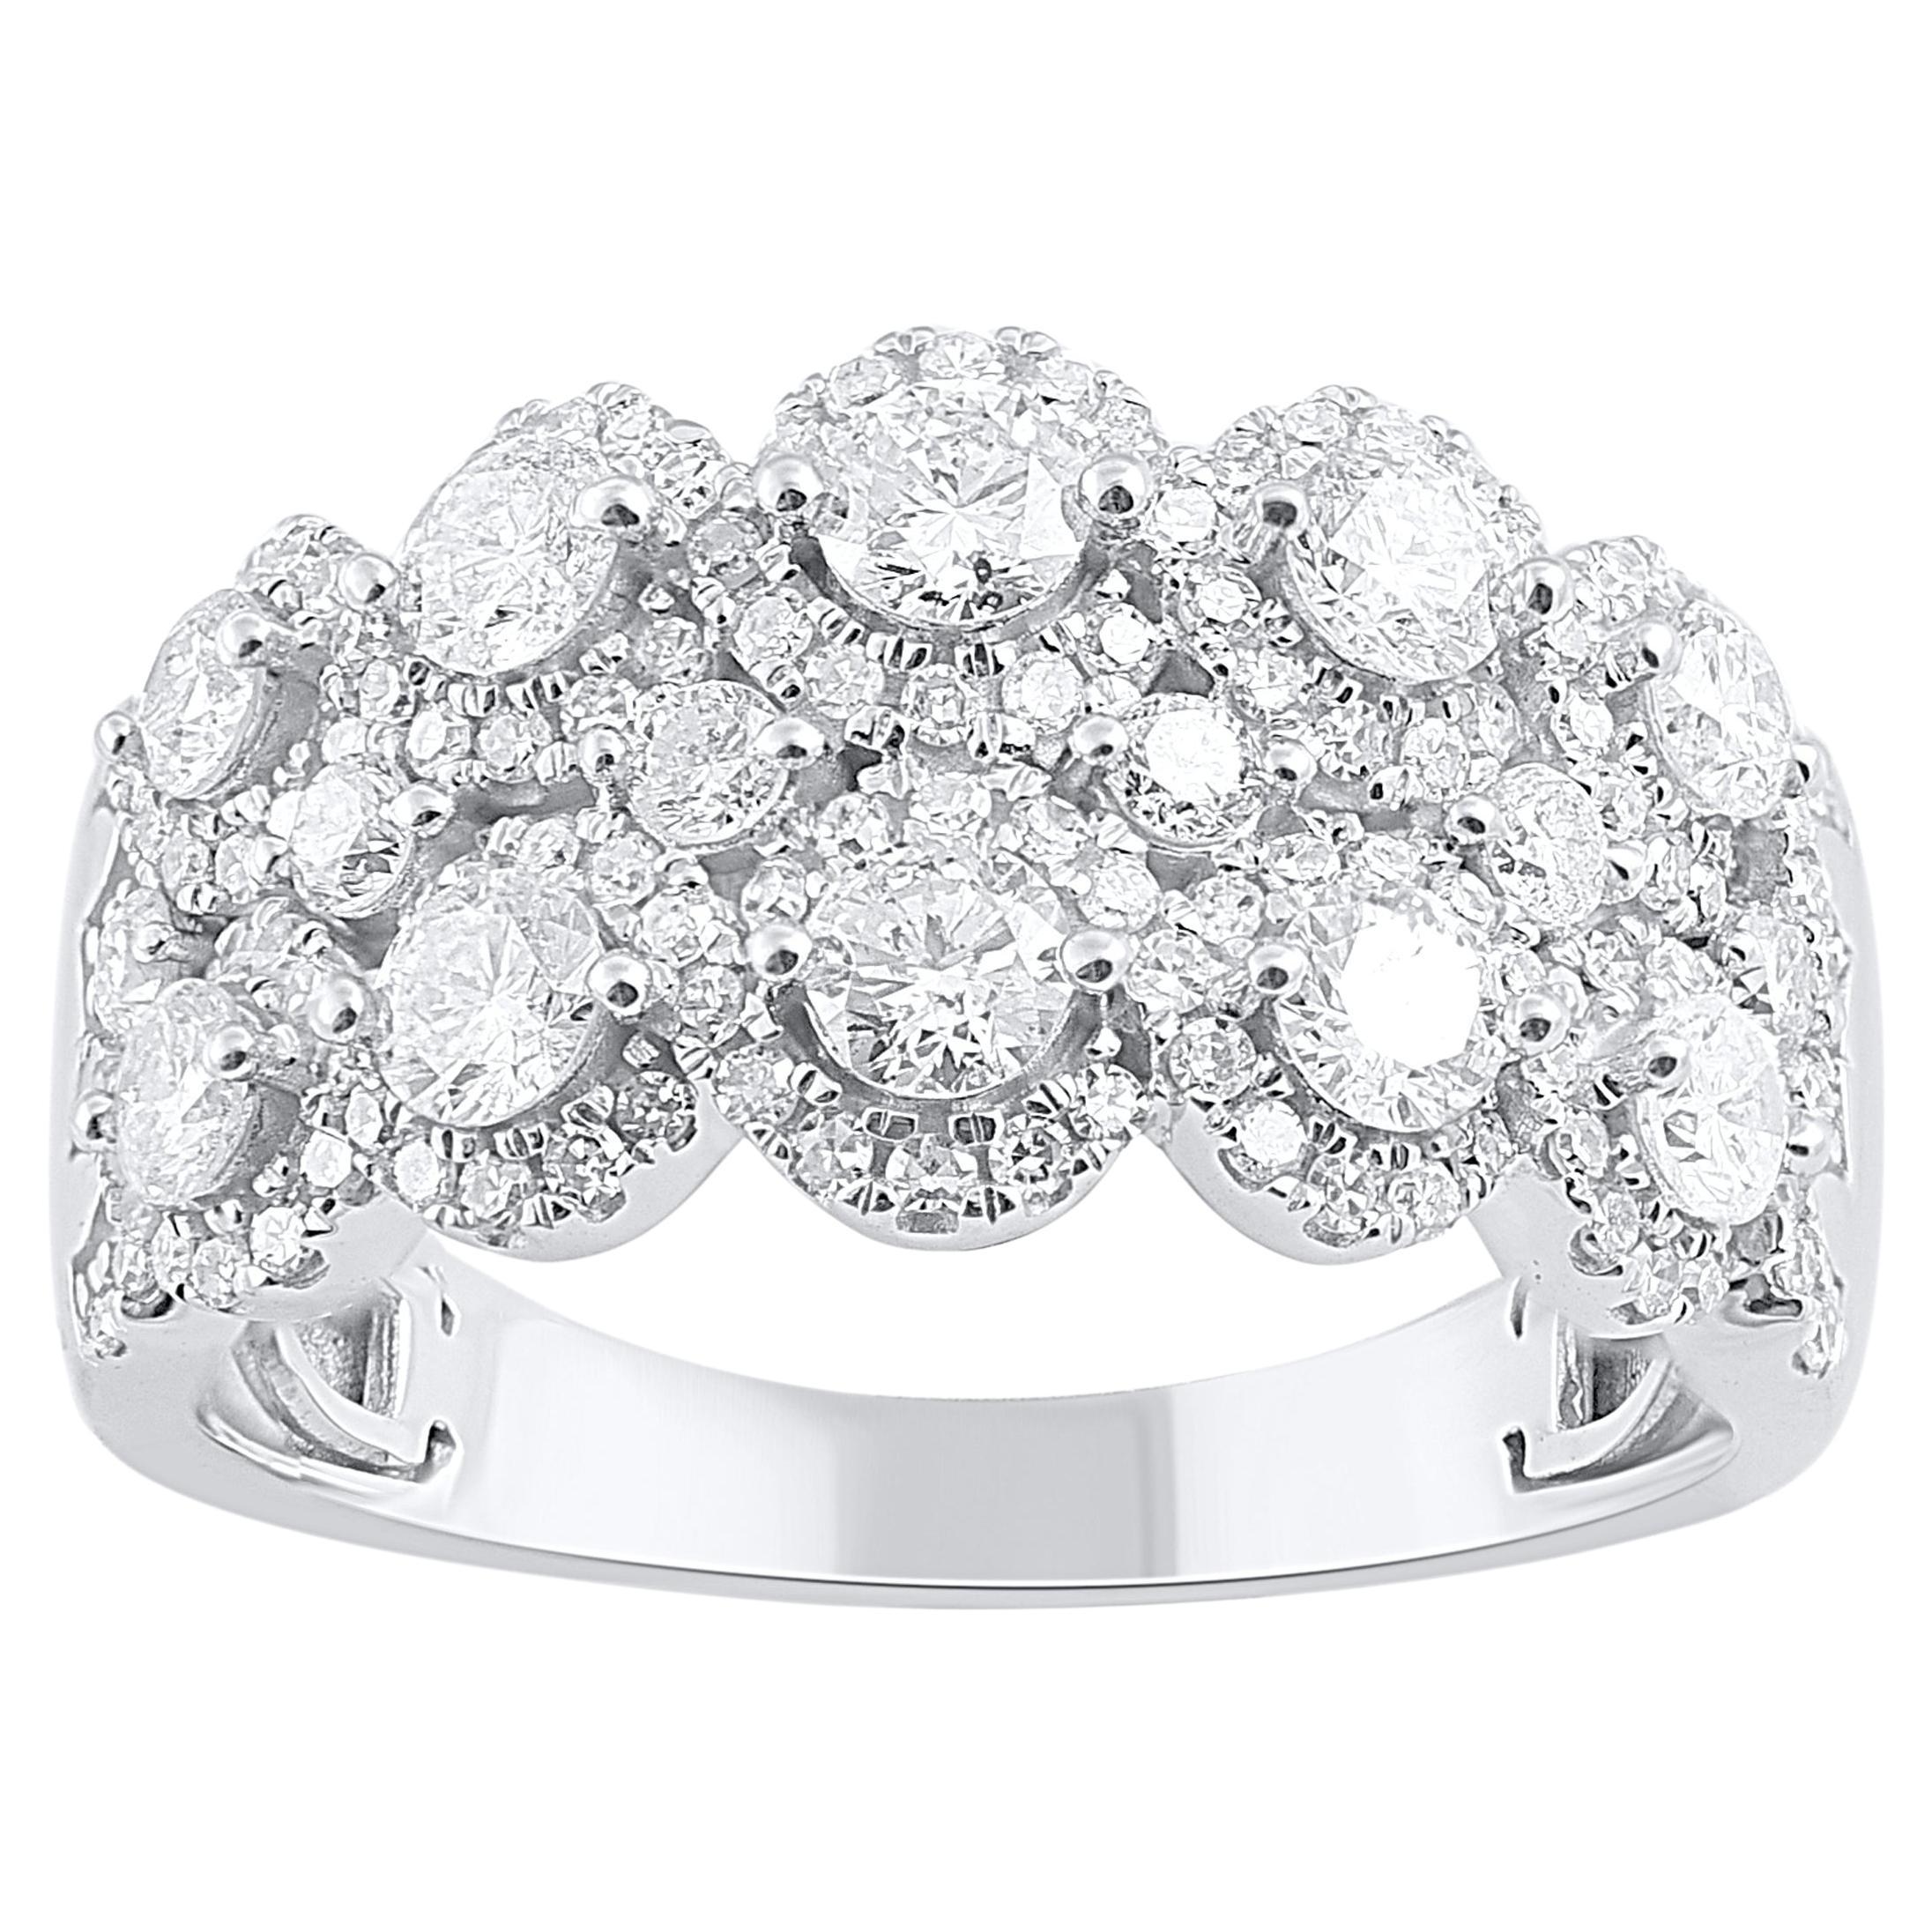 TJD 1.50 Carat Natural Diamond Vintage-Style Wedding Band Ring in 14 Karat Gold